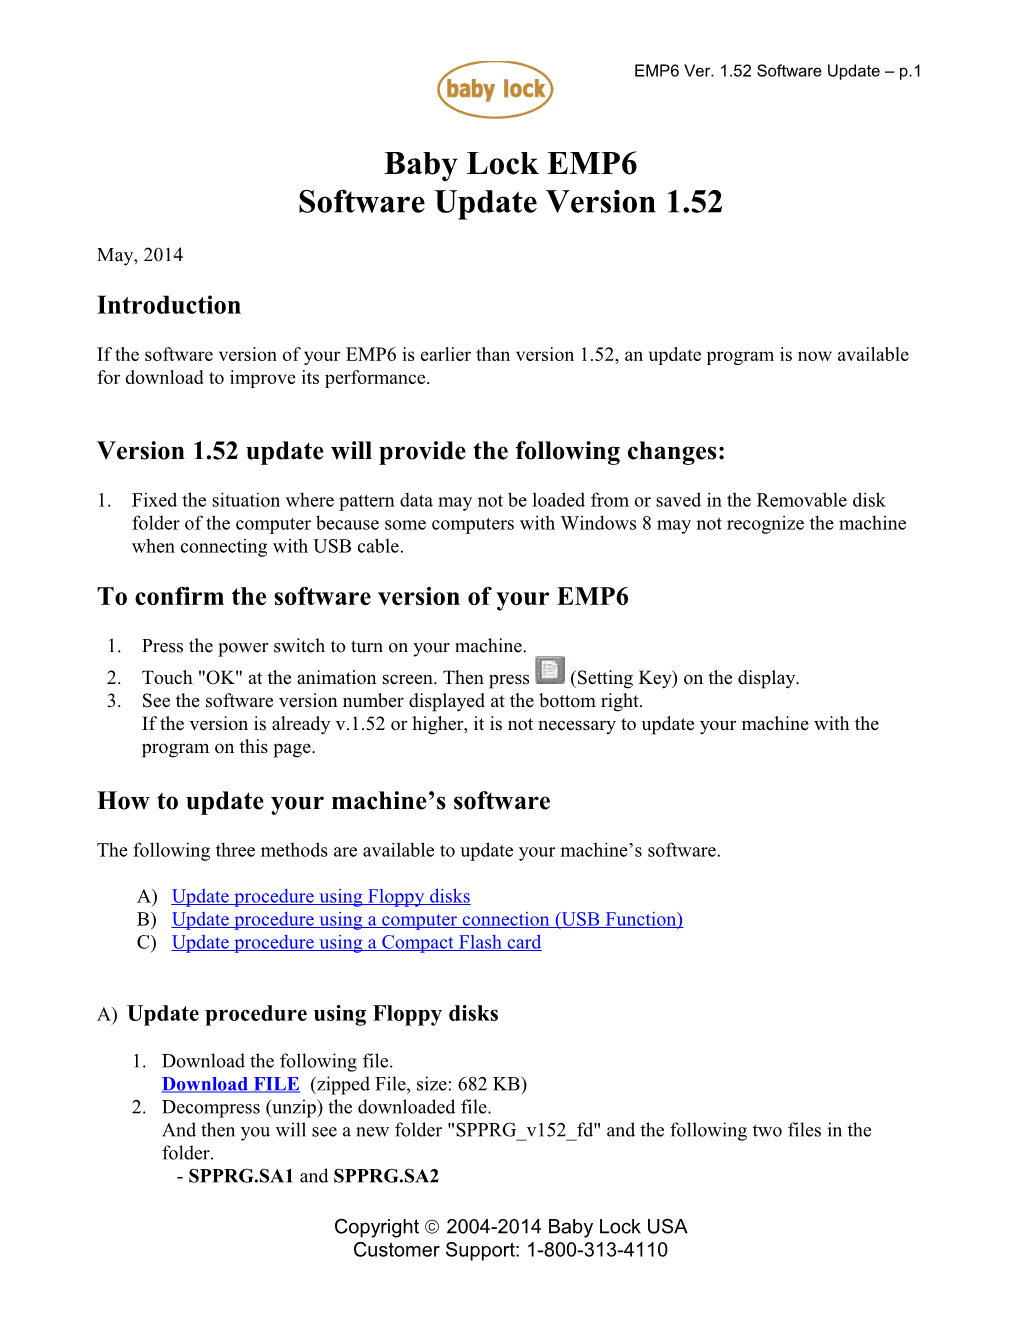 EMP6 Software Update Version 1.52